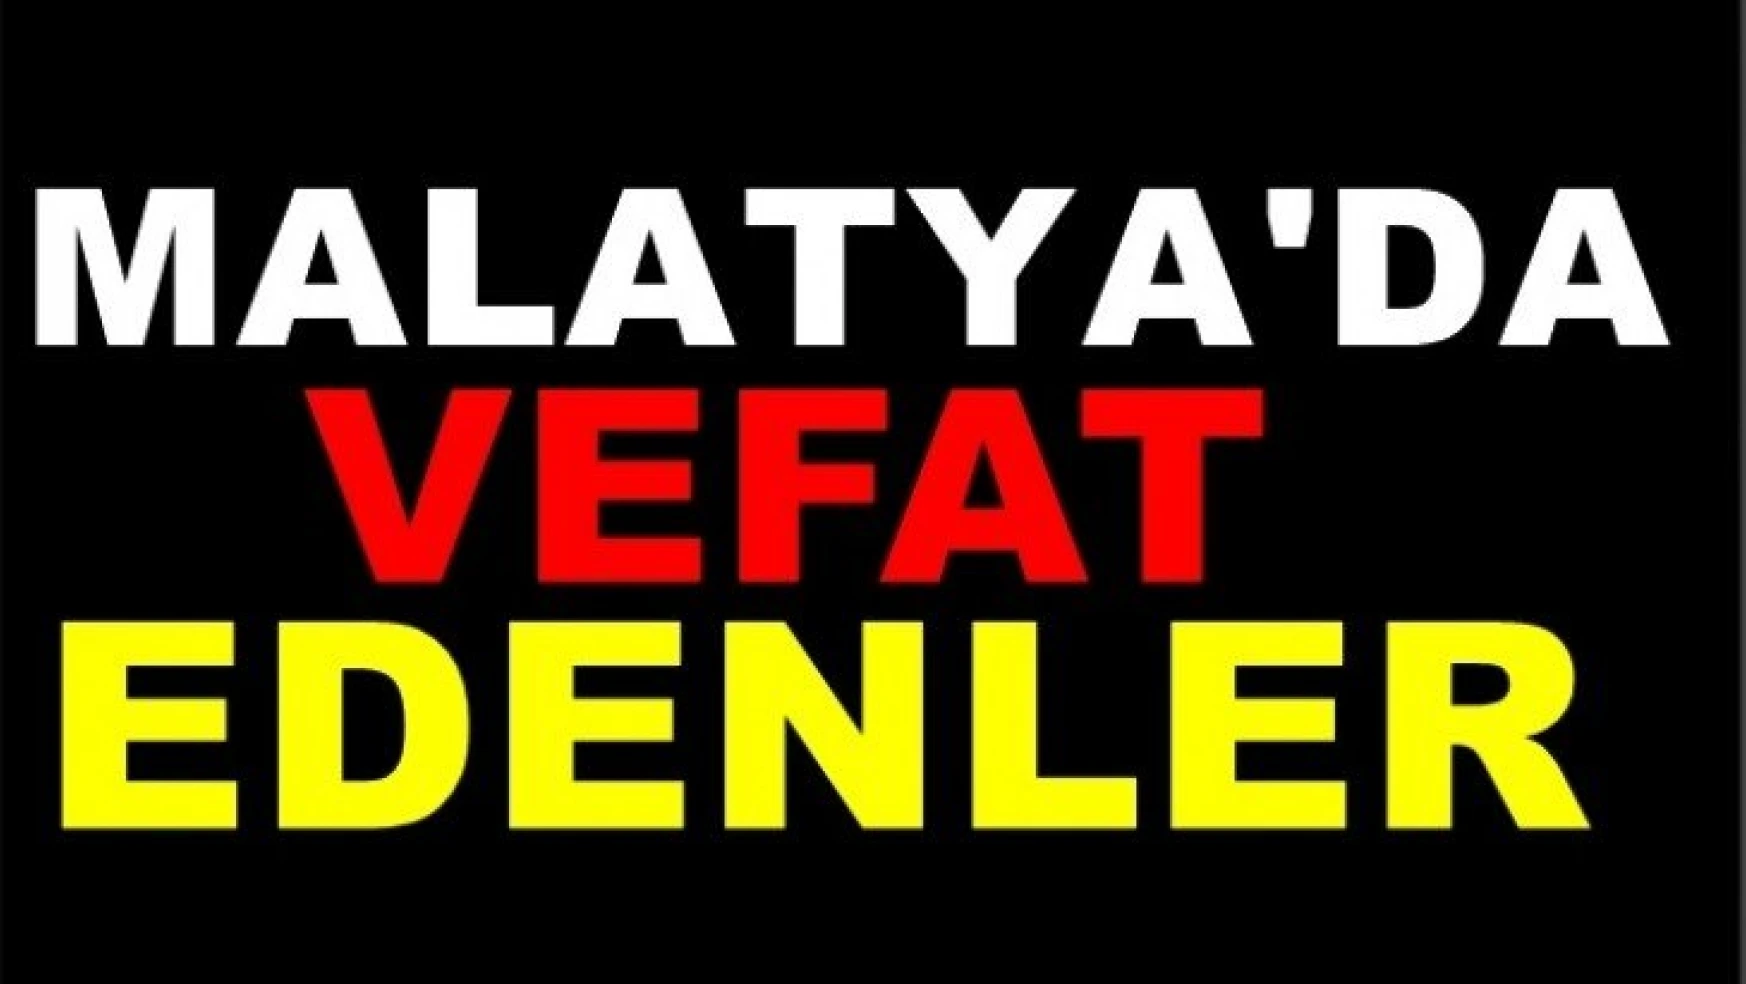 Malatya'da 16 kişi vefat etti